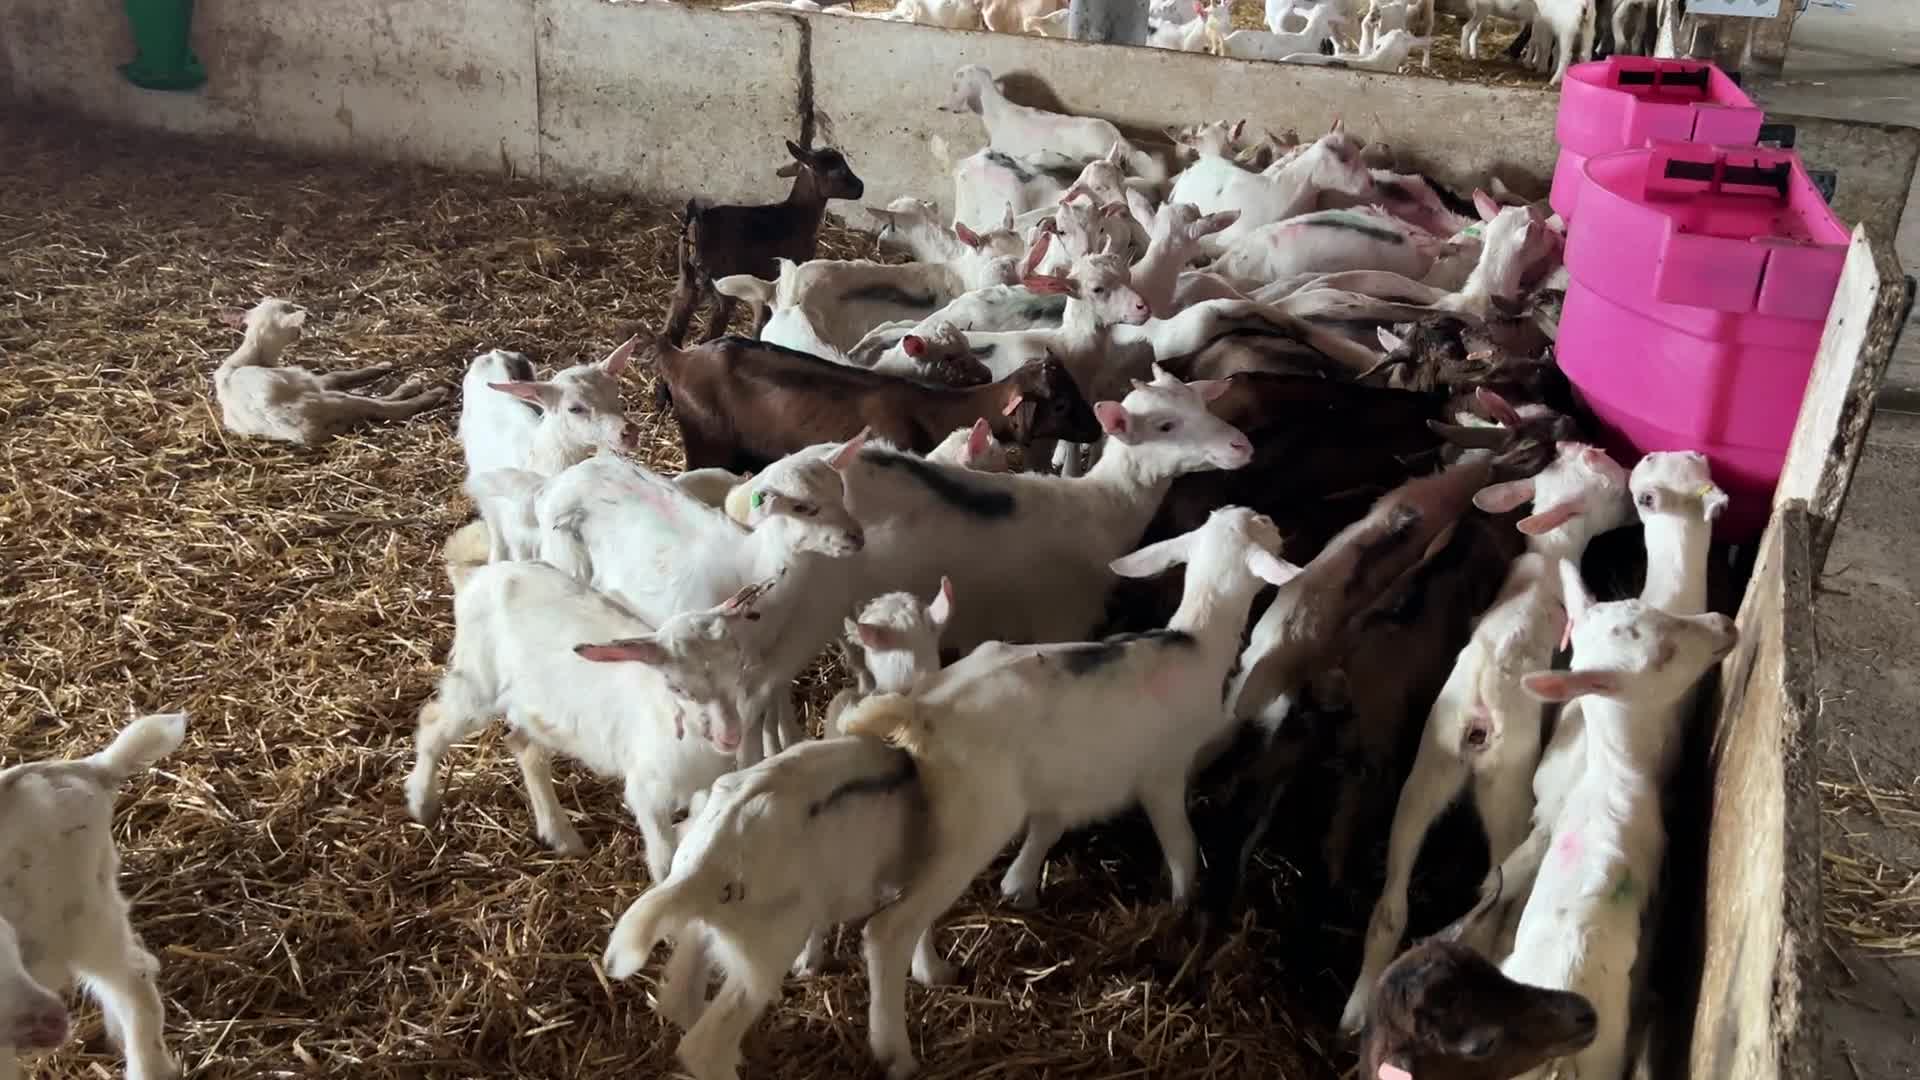 Goat farm in the Kyiv region